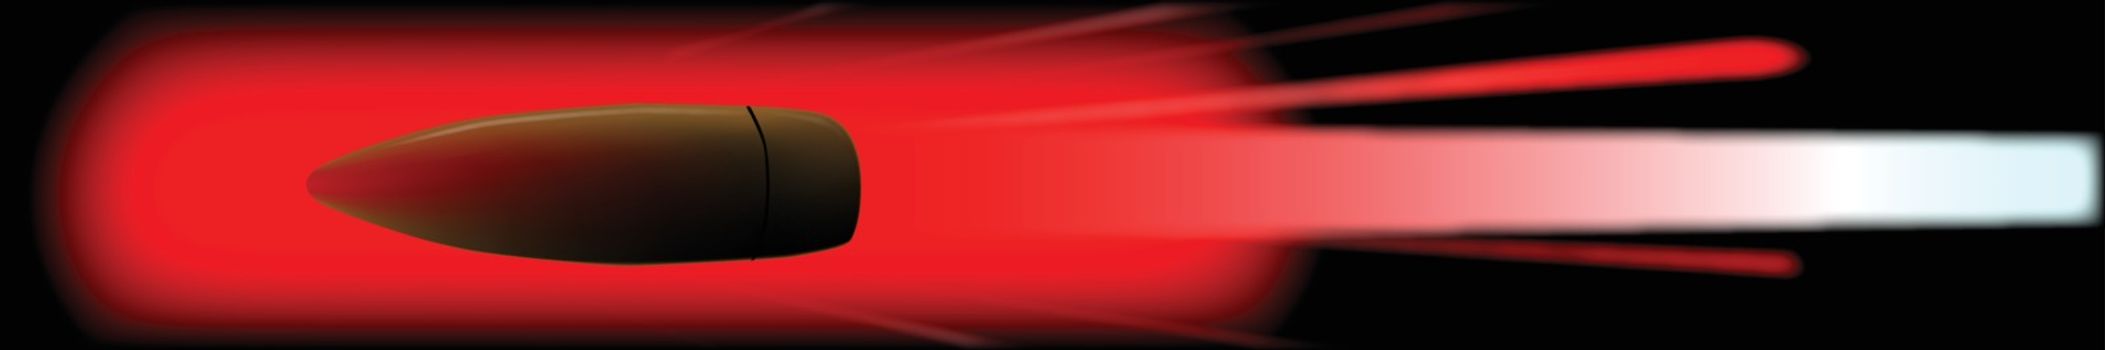 Red Hot Bullet Internet Web Banner Background